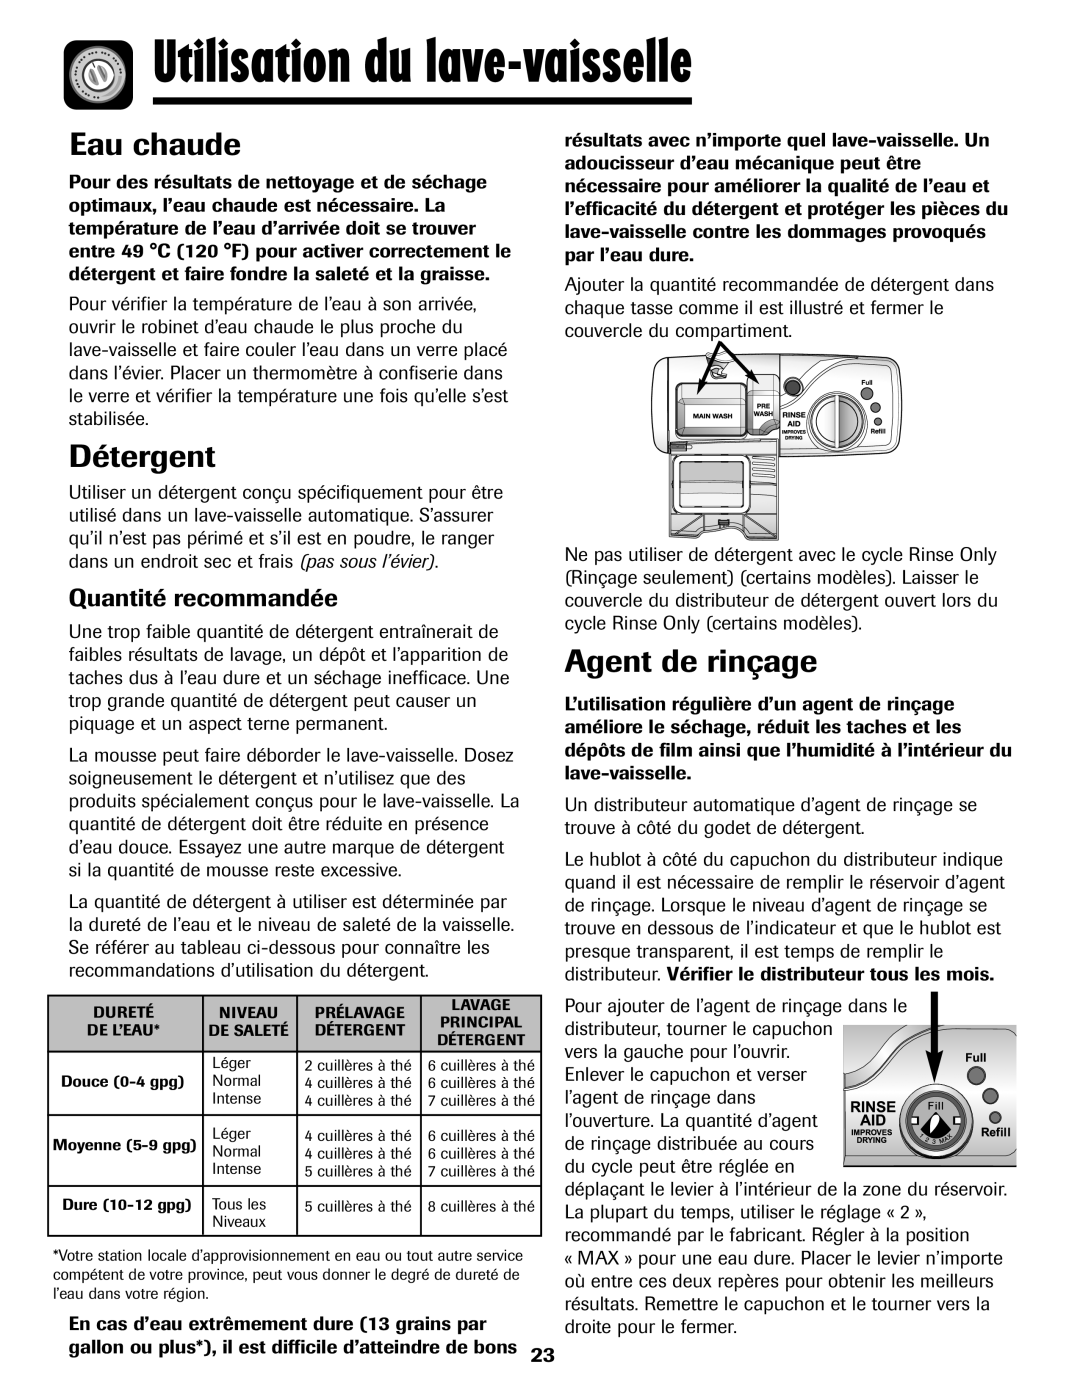 Maytag 6919559A warranty Utilisation du lave-vaisselle, Eau chaude, Détergent, Agent de rinçage, Quantité recommandée 